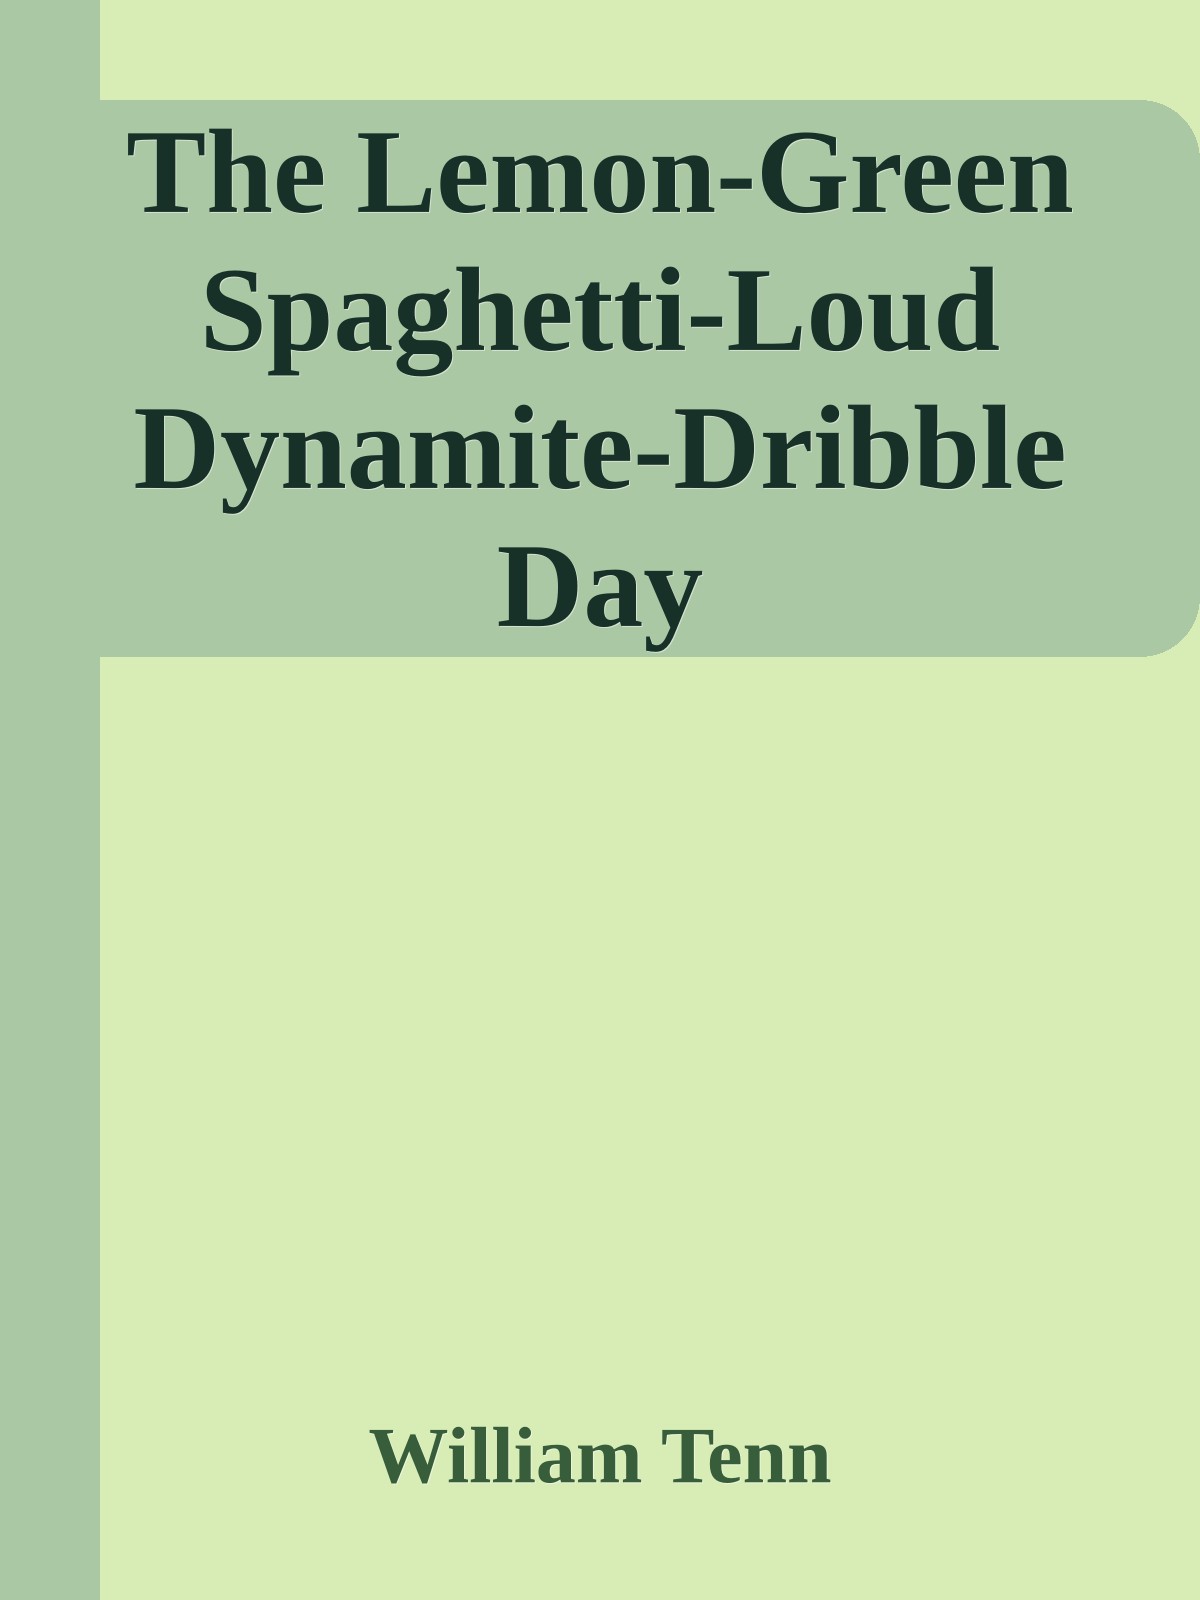 The Lemon-Green Spaghetti-Loud Dynamite-Dribble Day